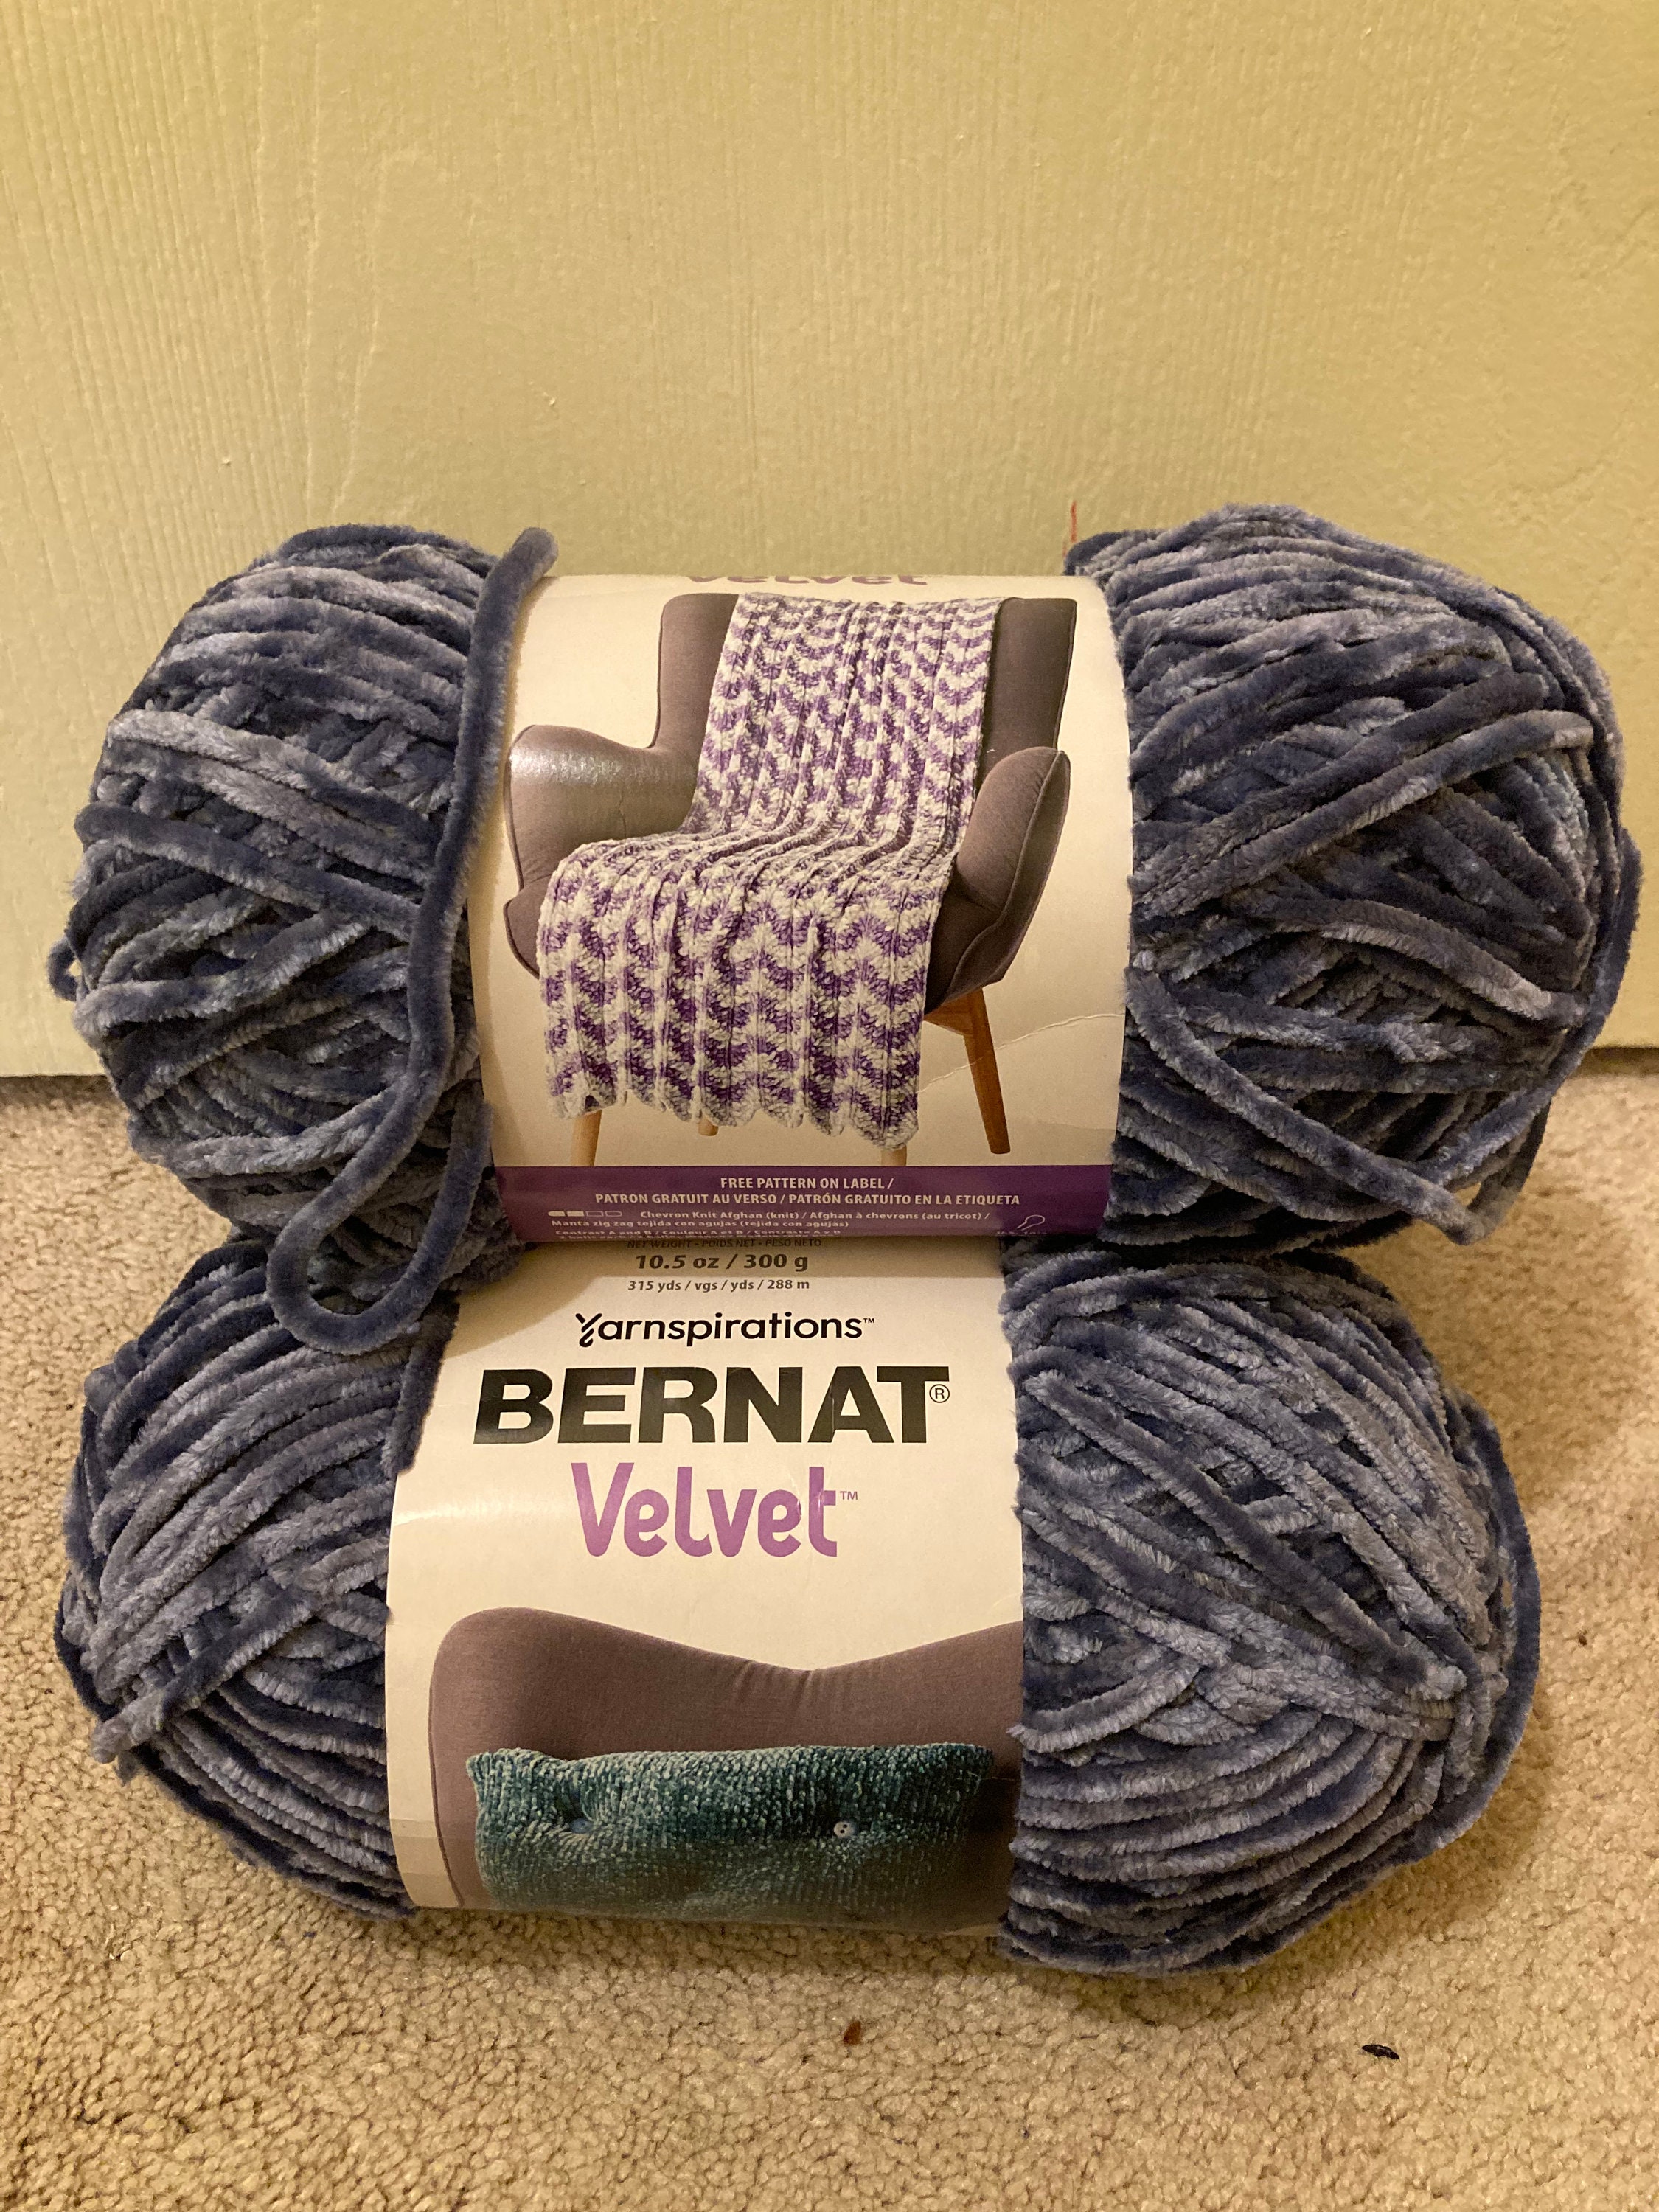 Bernat Baby Velvet Set of 3, 3.5oz/100gea 100% Polyester Restful